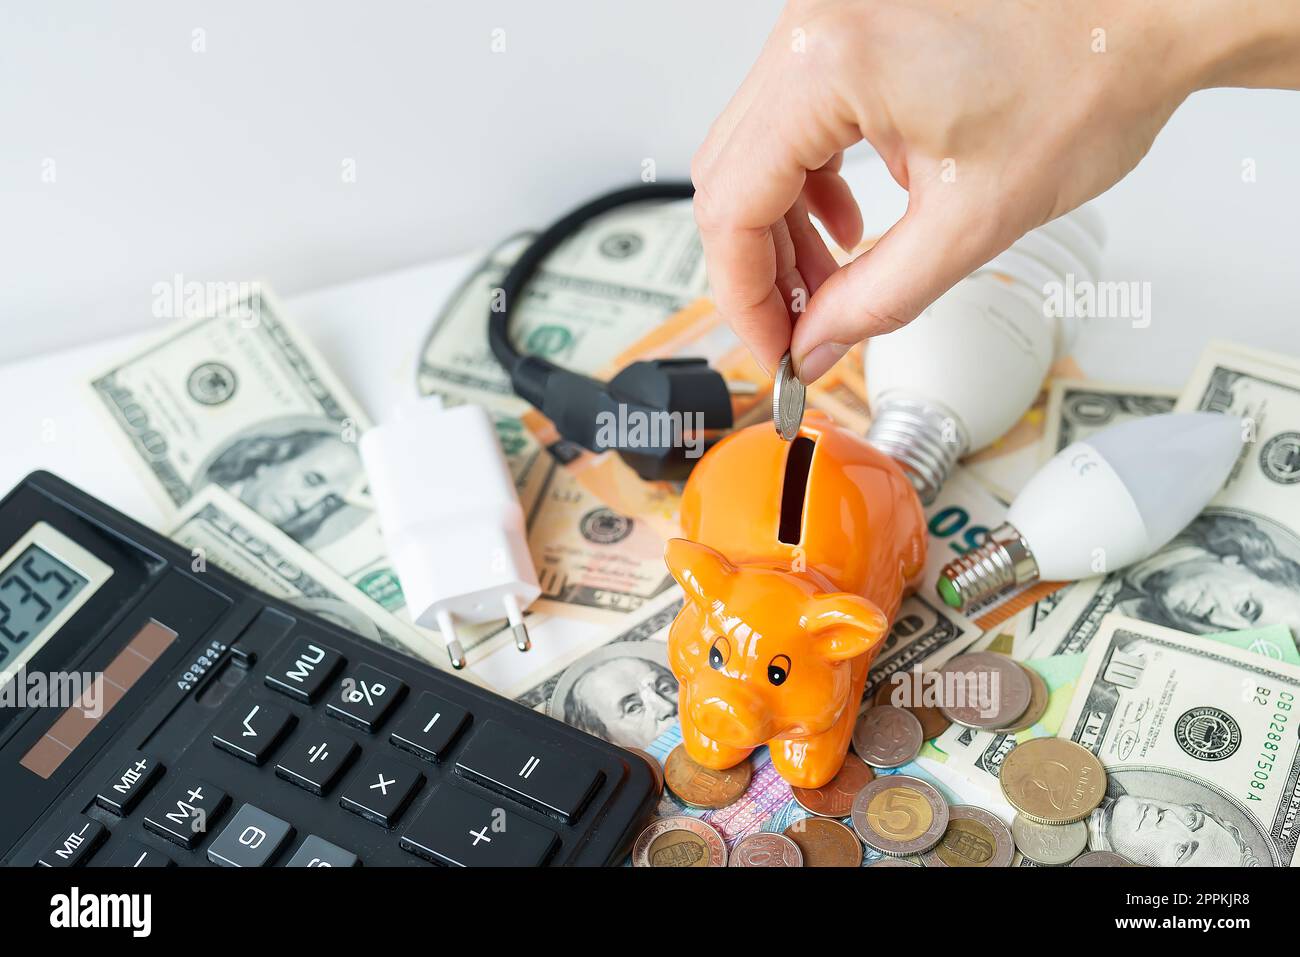 La mano de una mujer pone una moneda en una alcancía naranja en forma de cerdo, ahorrando dinero. Calculadora, billetes de euro y dólar, monedas. Tiempo de impuestos, pago de facturas, calculadora para contar. Foto de stock